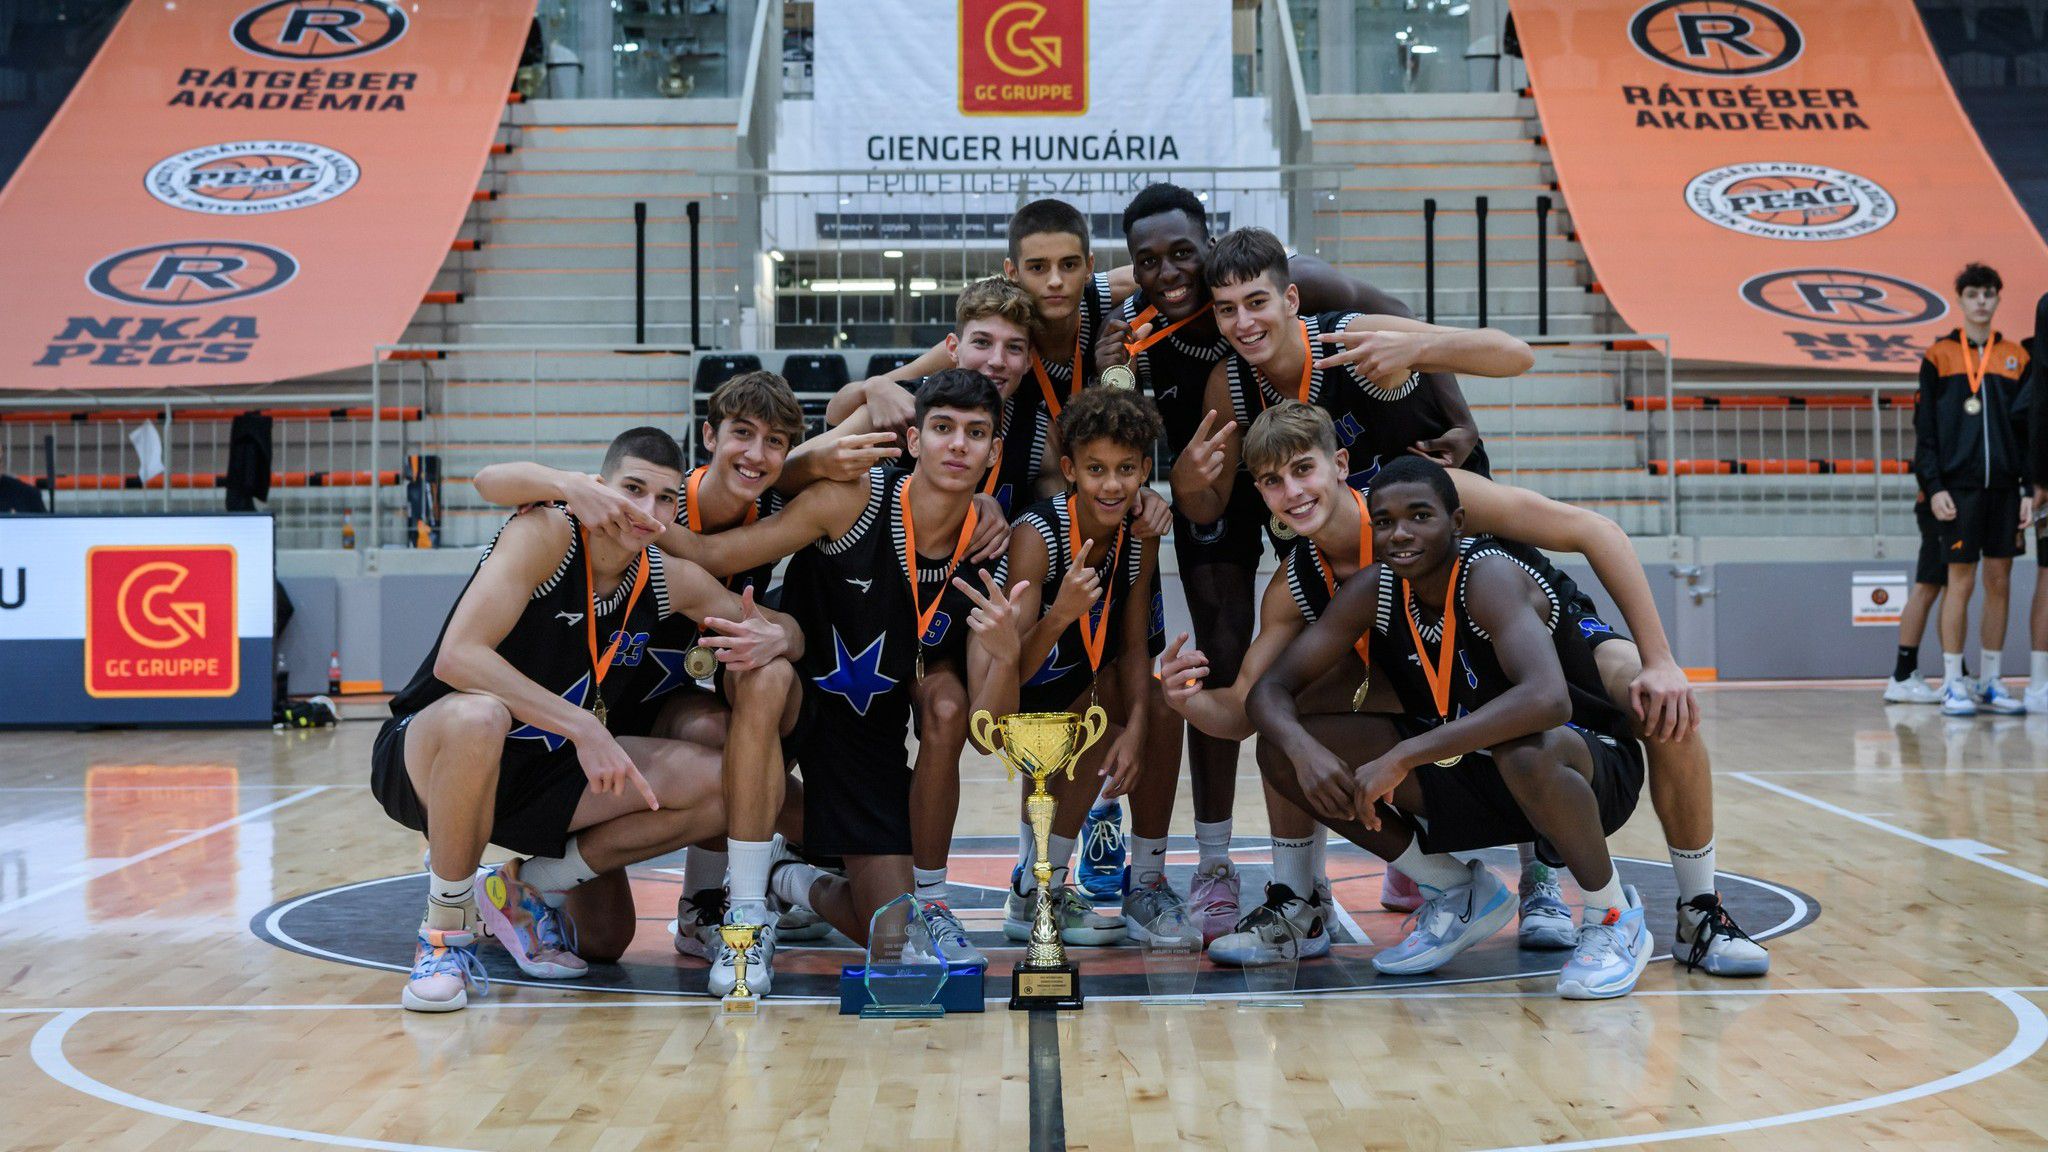 Olasz csapat nyerte a pécsi utánpótlástornát (Fotó: Rátgéber Kosárlabda Akadémia)